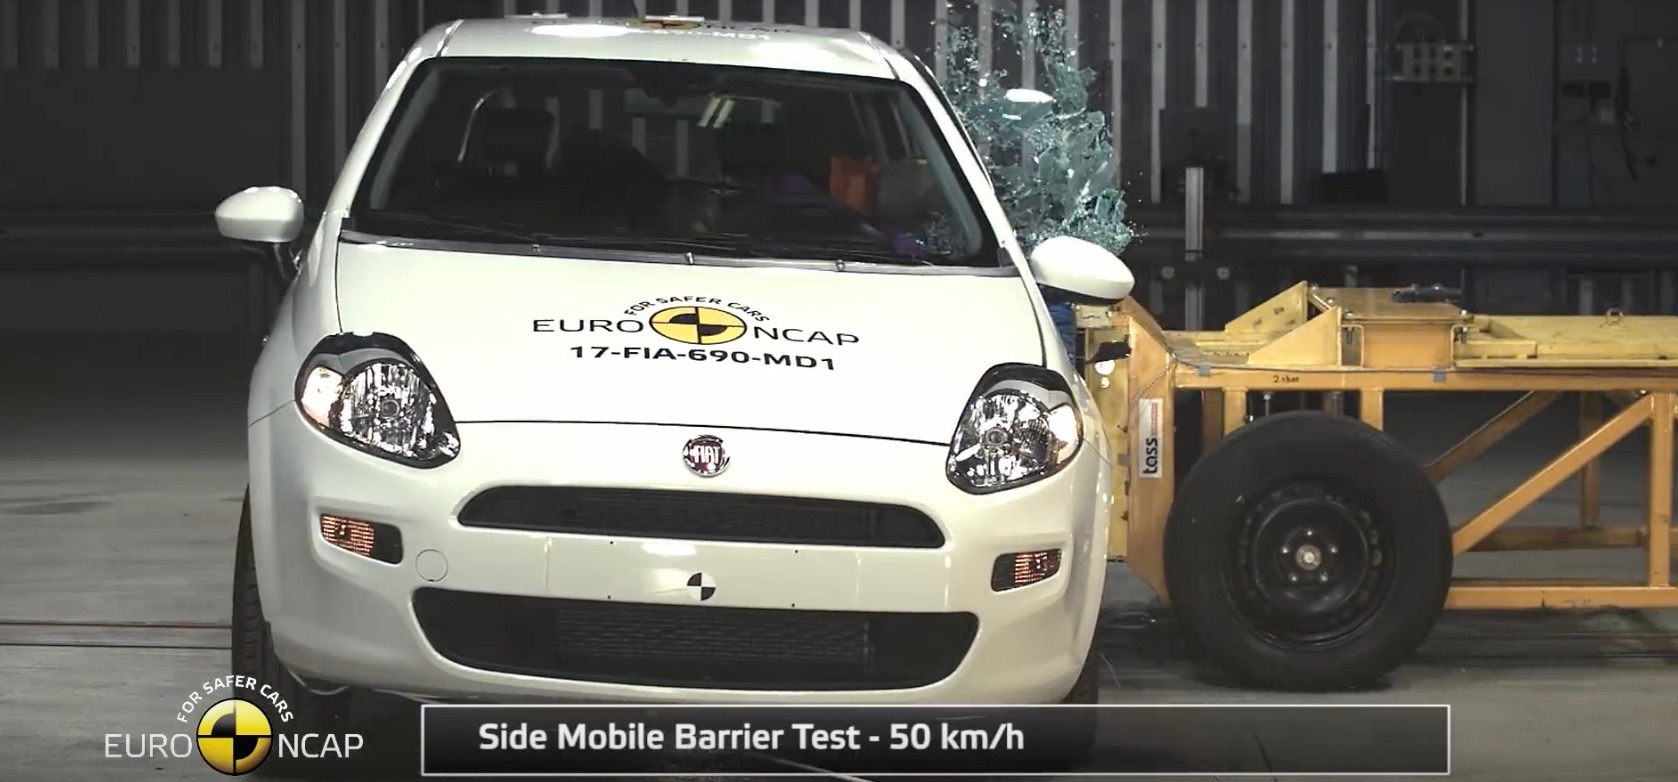 Fiat Punto otrzymał w teście Euro NCAP zero gwiazdek. Zrodlo: YouTube